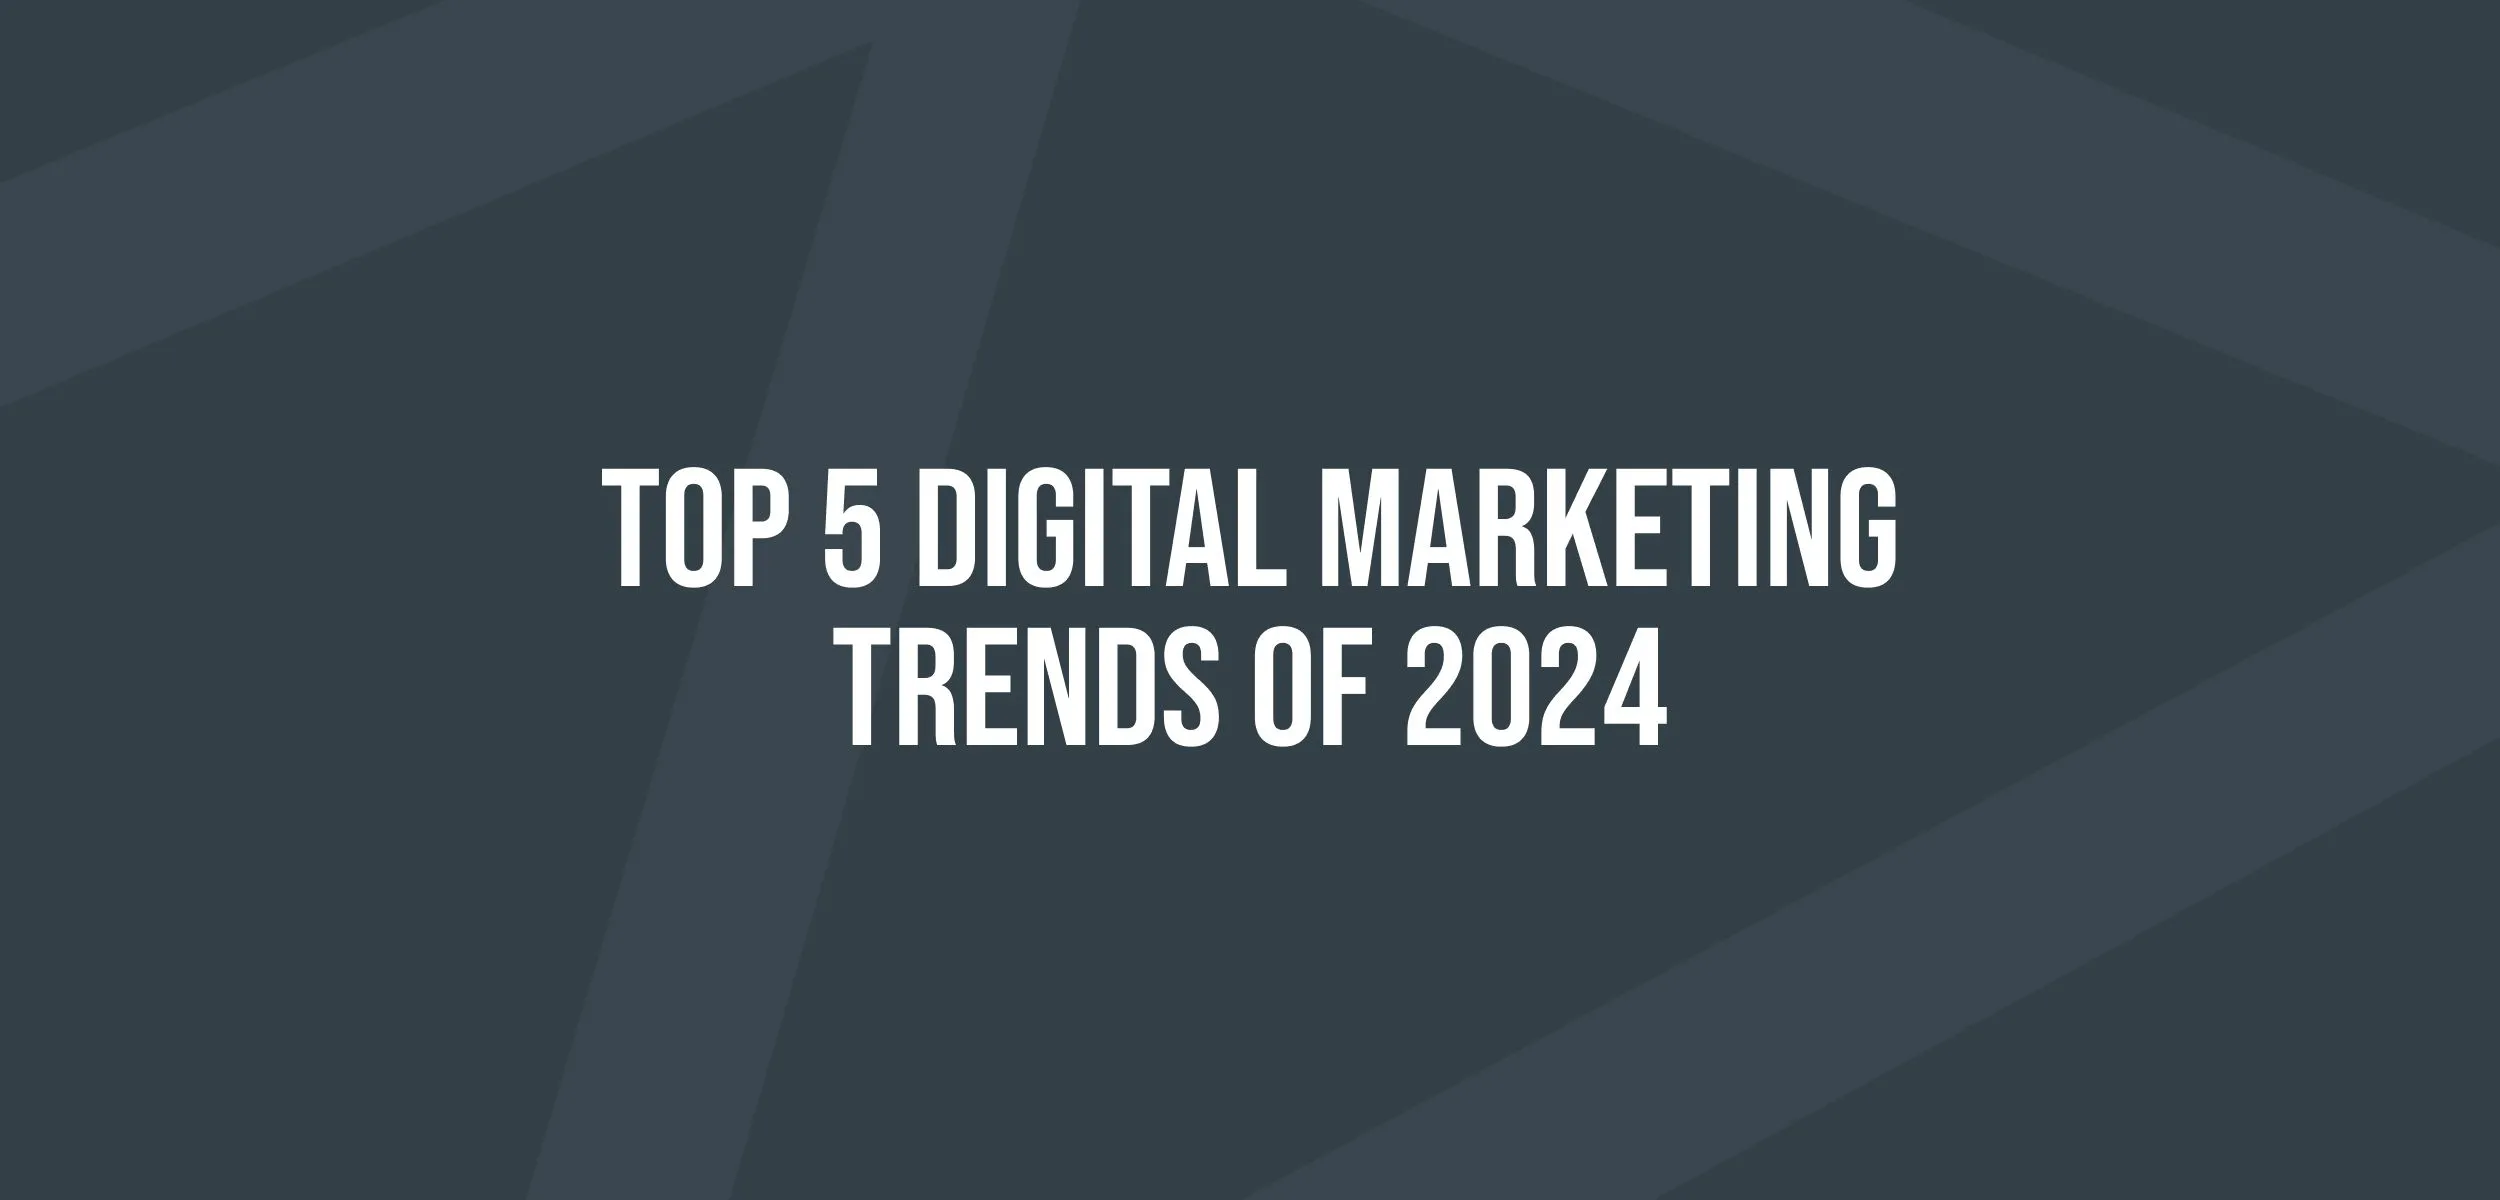 5 Tren Digital Marketing di Tahun 2024, Pengusaha Wajib Tahu!